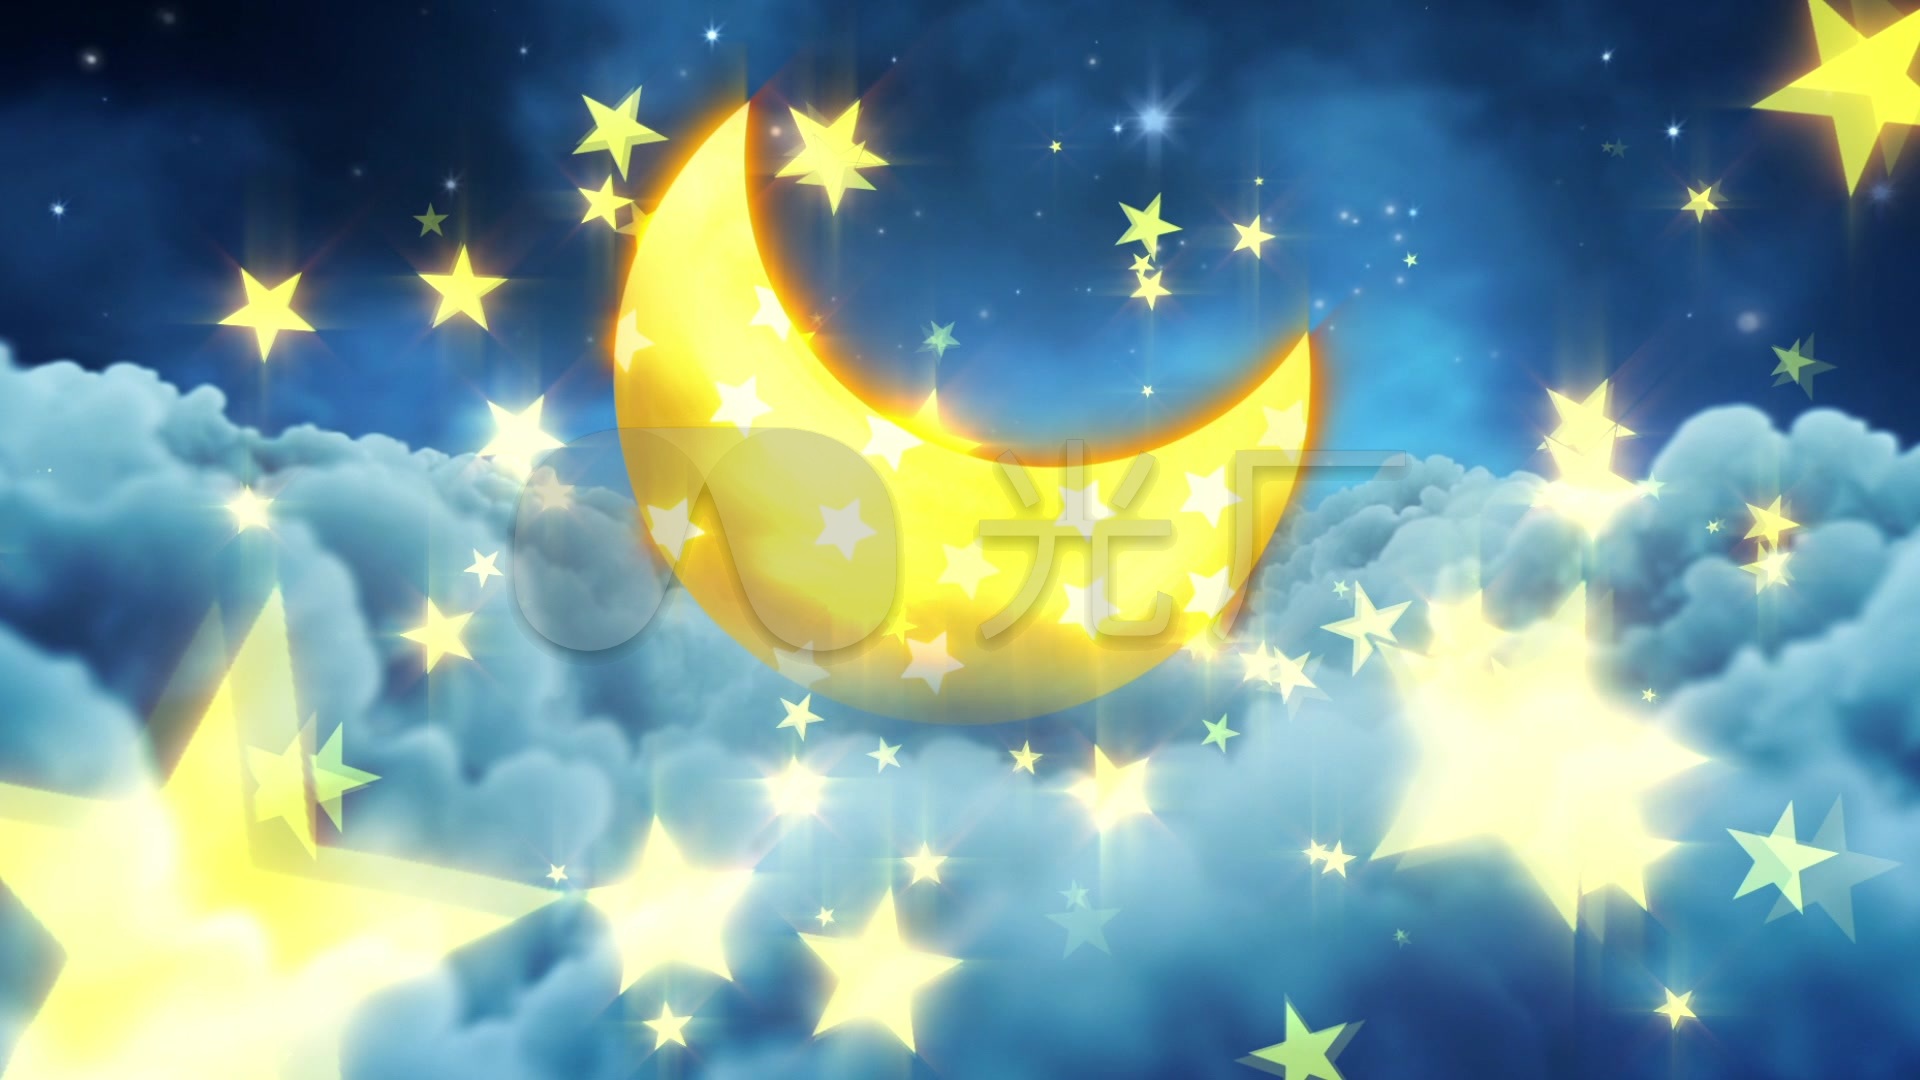 星月童话唯美星空卡通背景视频素材